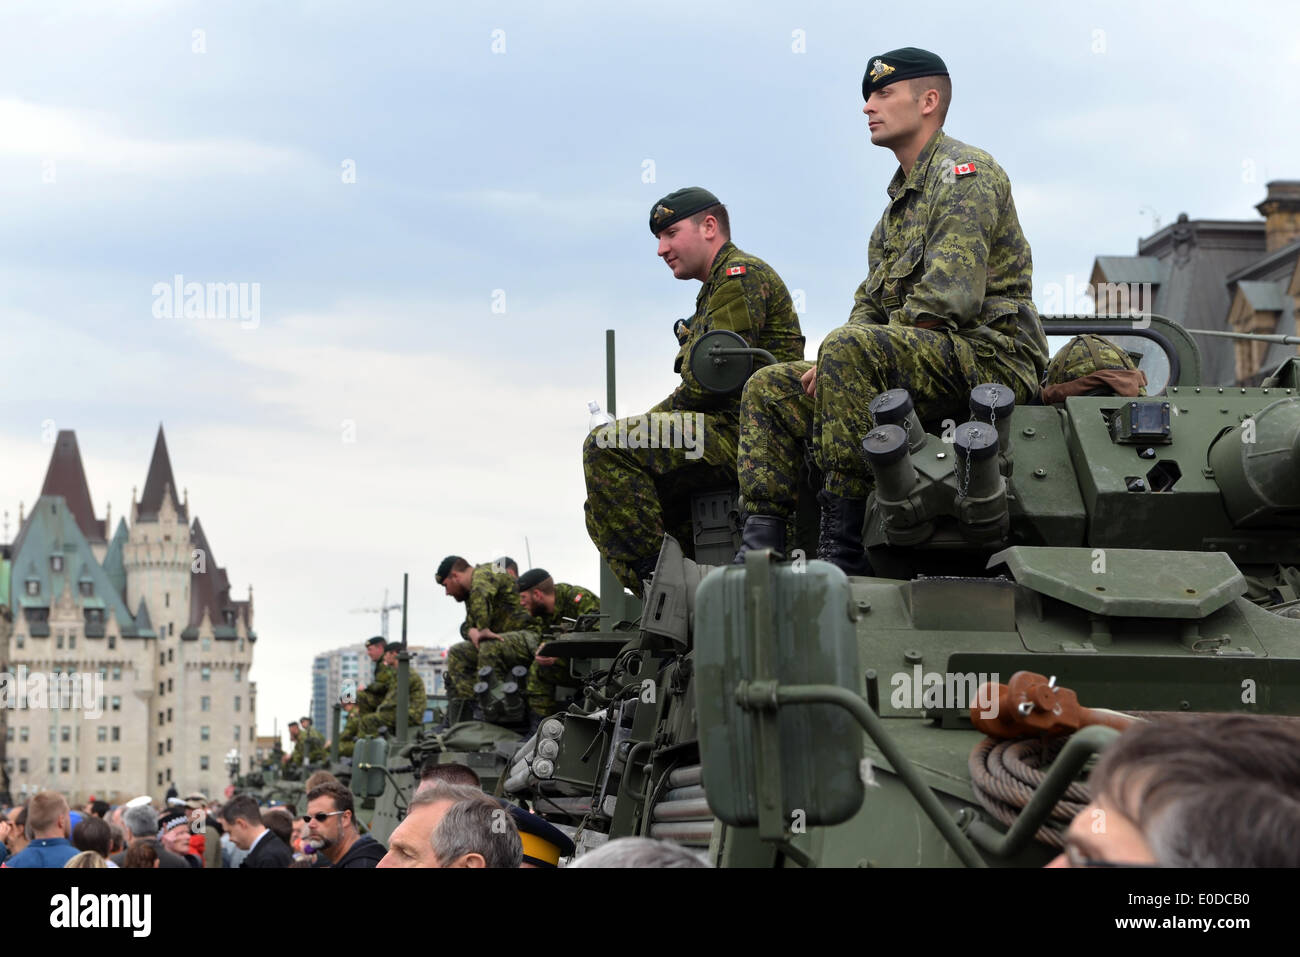 Les soldats qui ont servi dans les Forces canadiennes en Afghanistan sont à l'honneur sur la Colline du Parlement durant la journée nationale de l'honneur le 9 mai 2014 à Ottawa, Canada Banque D'Images